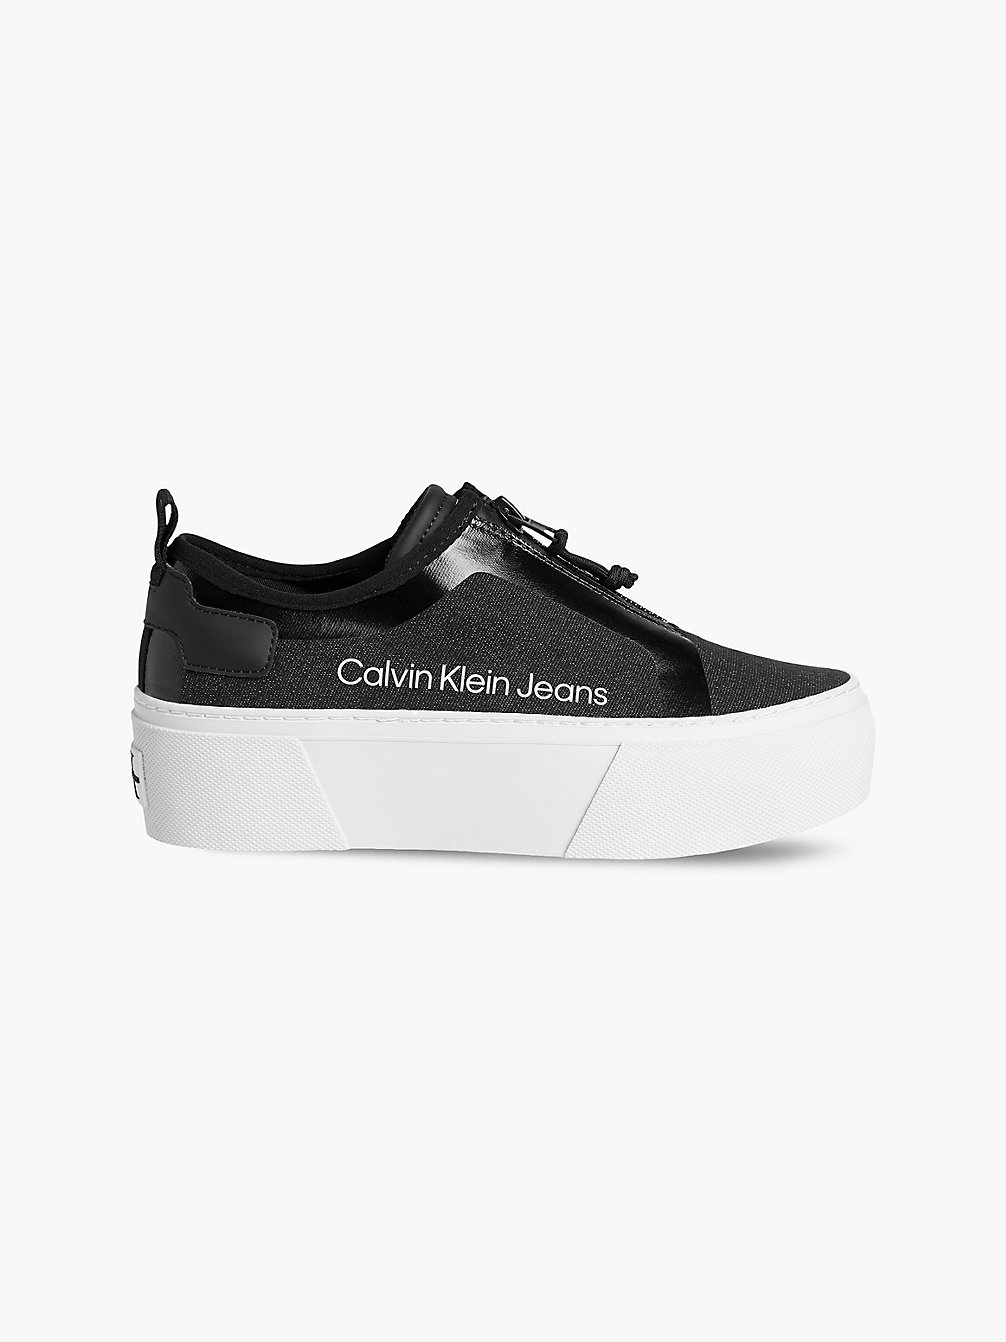 BLACK > Zapinane Na Zamek Buty Sportowe Na Platformie Z Przetworzonego Materiału Płóciennego > undefined Kobiety - Calvin Klein